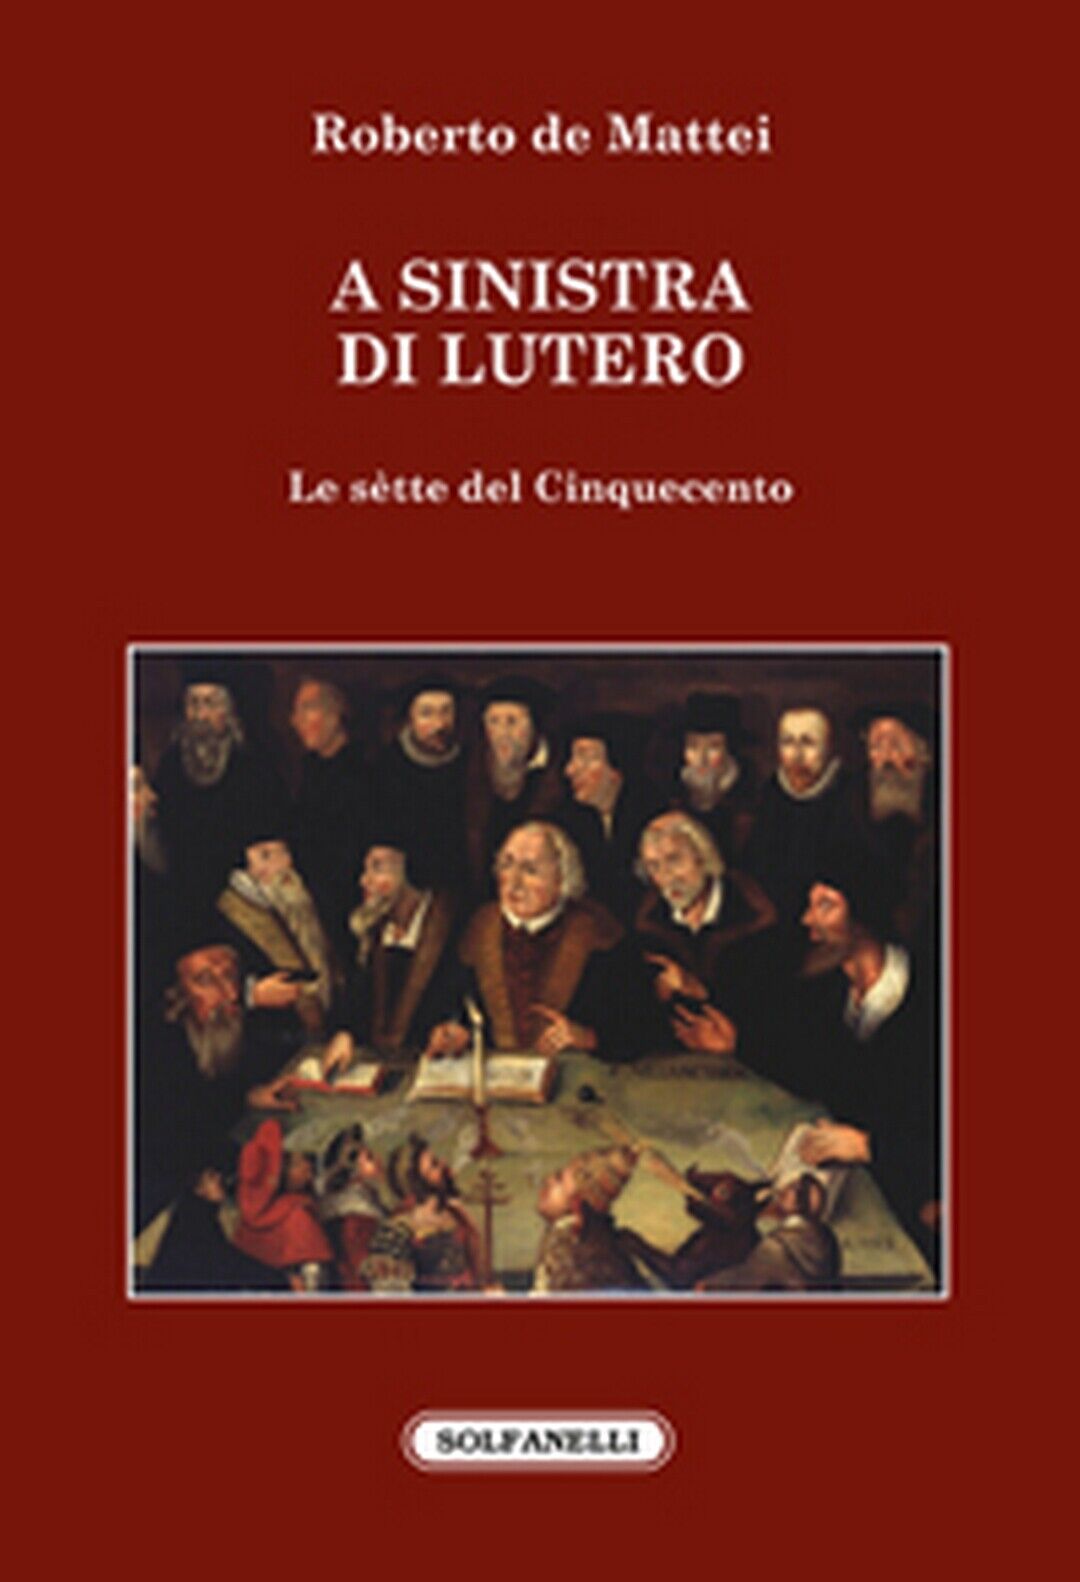 A SINISTRA DI LUTERO Le s?tte del Cinquecento  di Roberto De Mattei,  Solfanelli libro usato